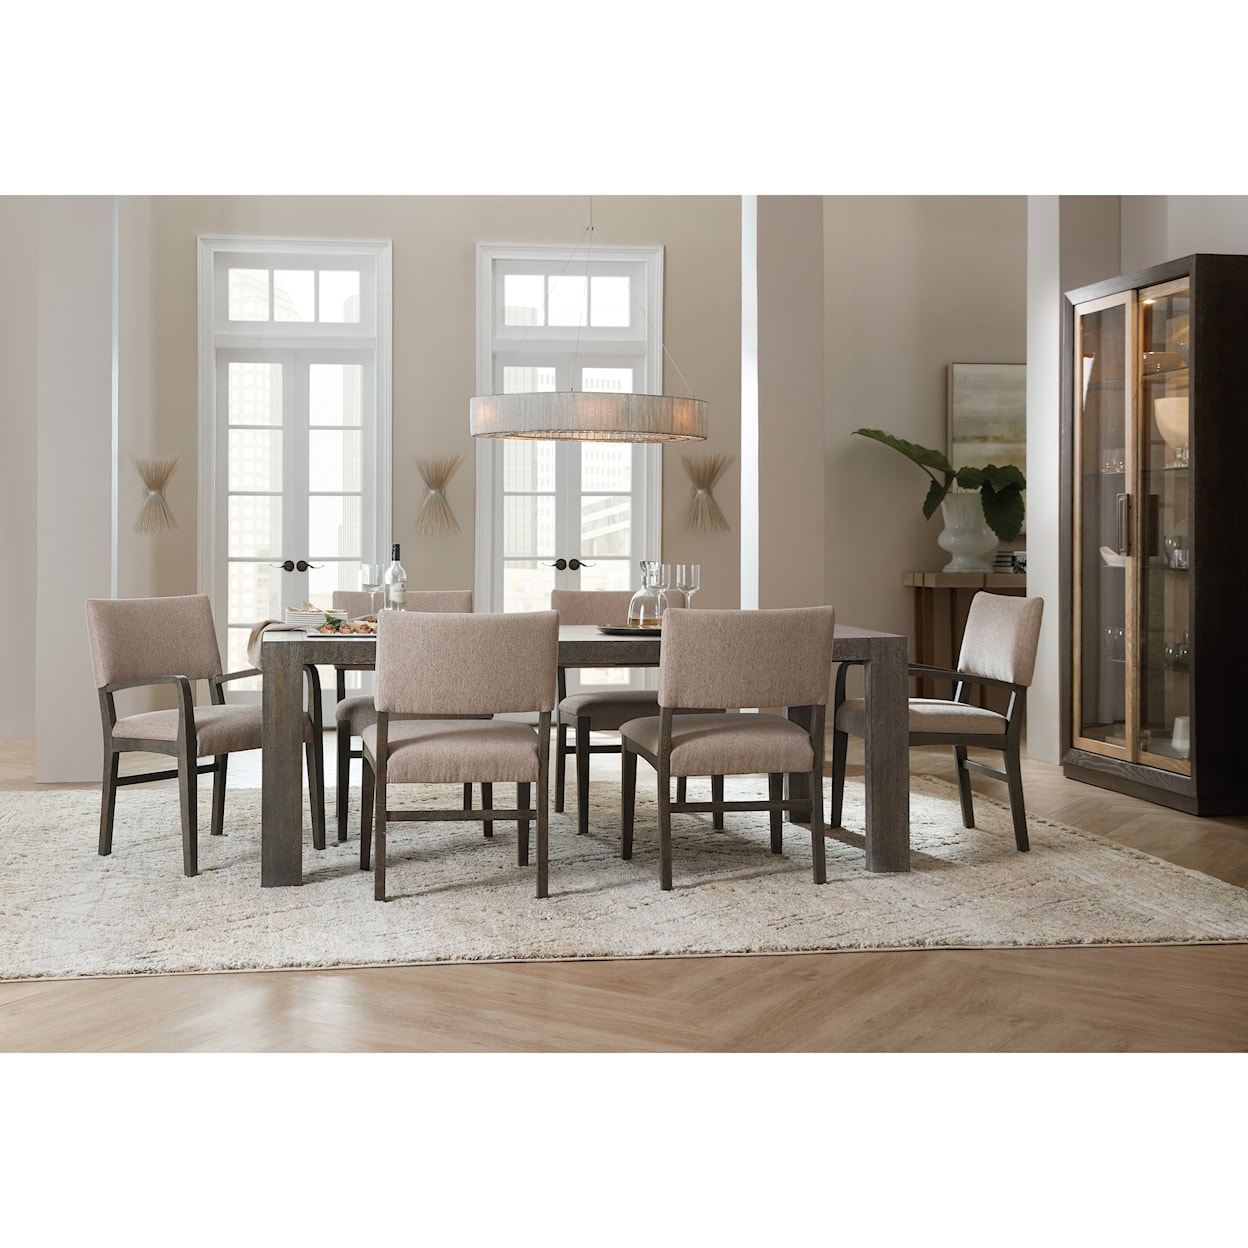 Hooker Furniture Miramar - Point Reyes Umberto Leg Dining Table